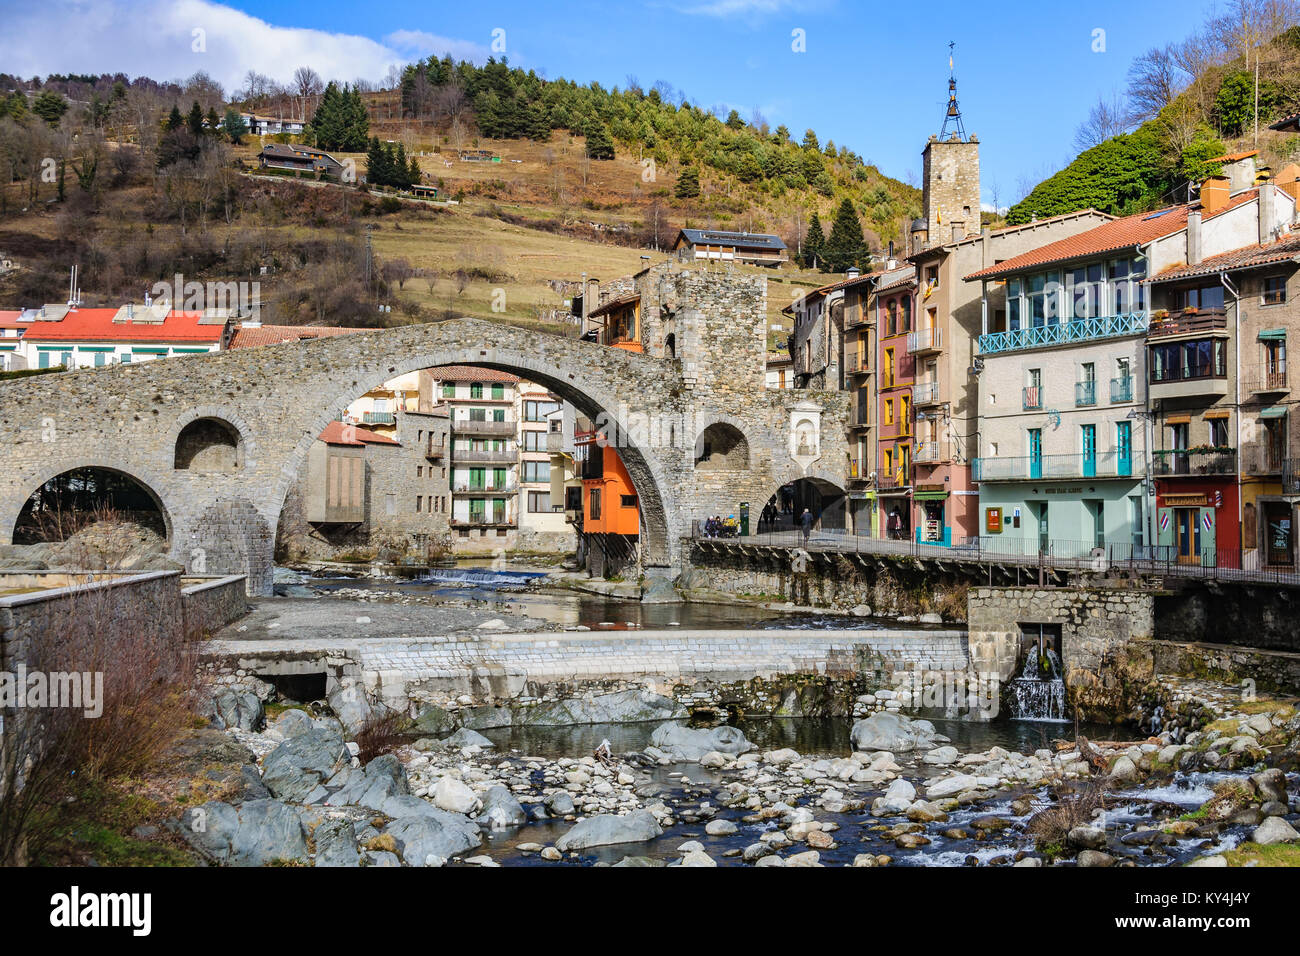 Pont de pierre et rivière dans le village Catalan médiéval de Camprodon, Espagne Banque D'Images